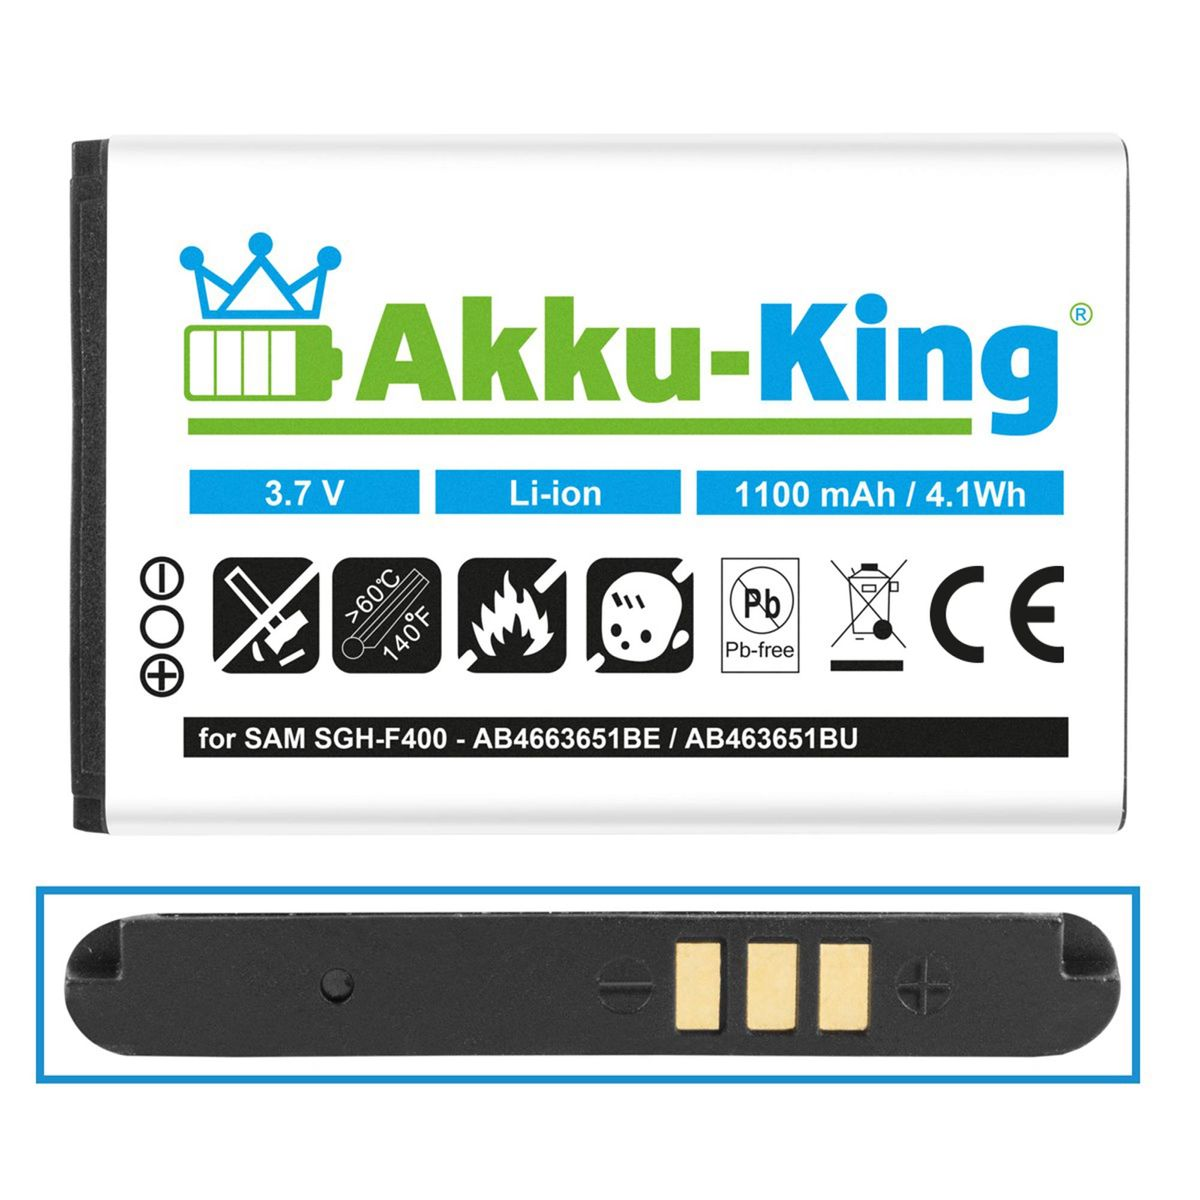 1050mAh AKKU-KING AB463651BE kompatibel 3.7 Li-Ion mit Volt, Handy-Akku, Akku Samsung